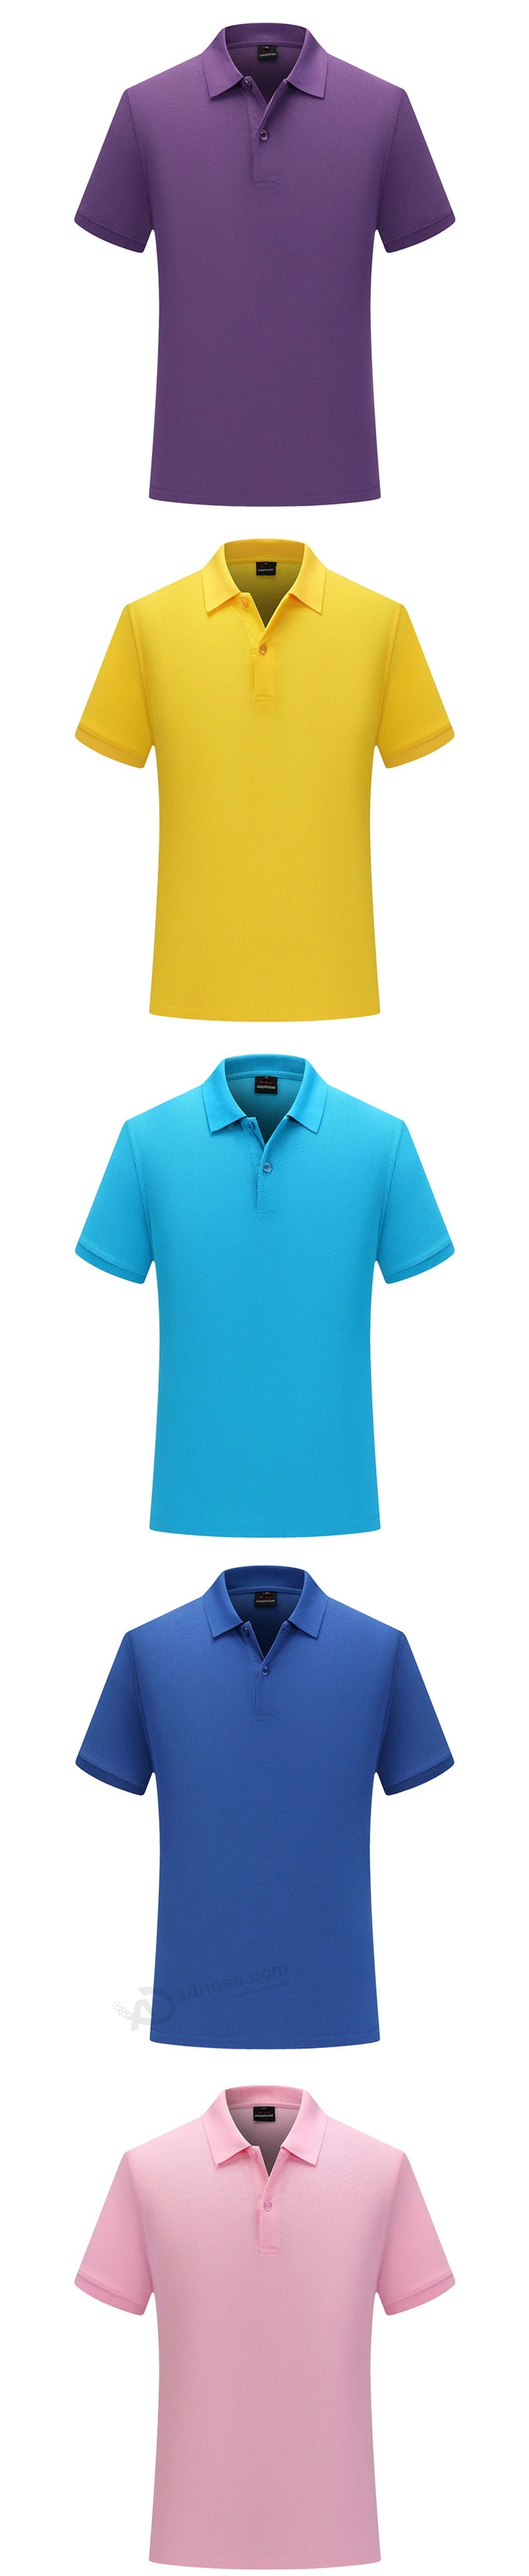 Poloshirt op maat effen kleur T-shirt katoen werkkleding korte mouwen op maat borduurwerk reclameshirt DIY gedrukt logo